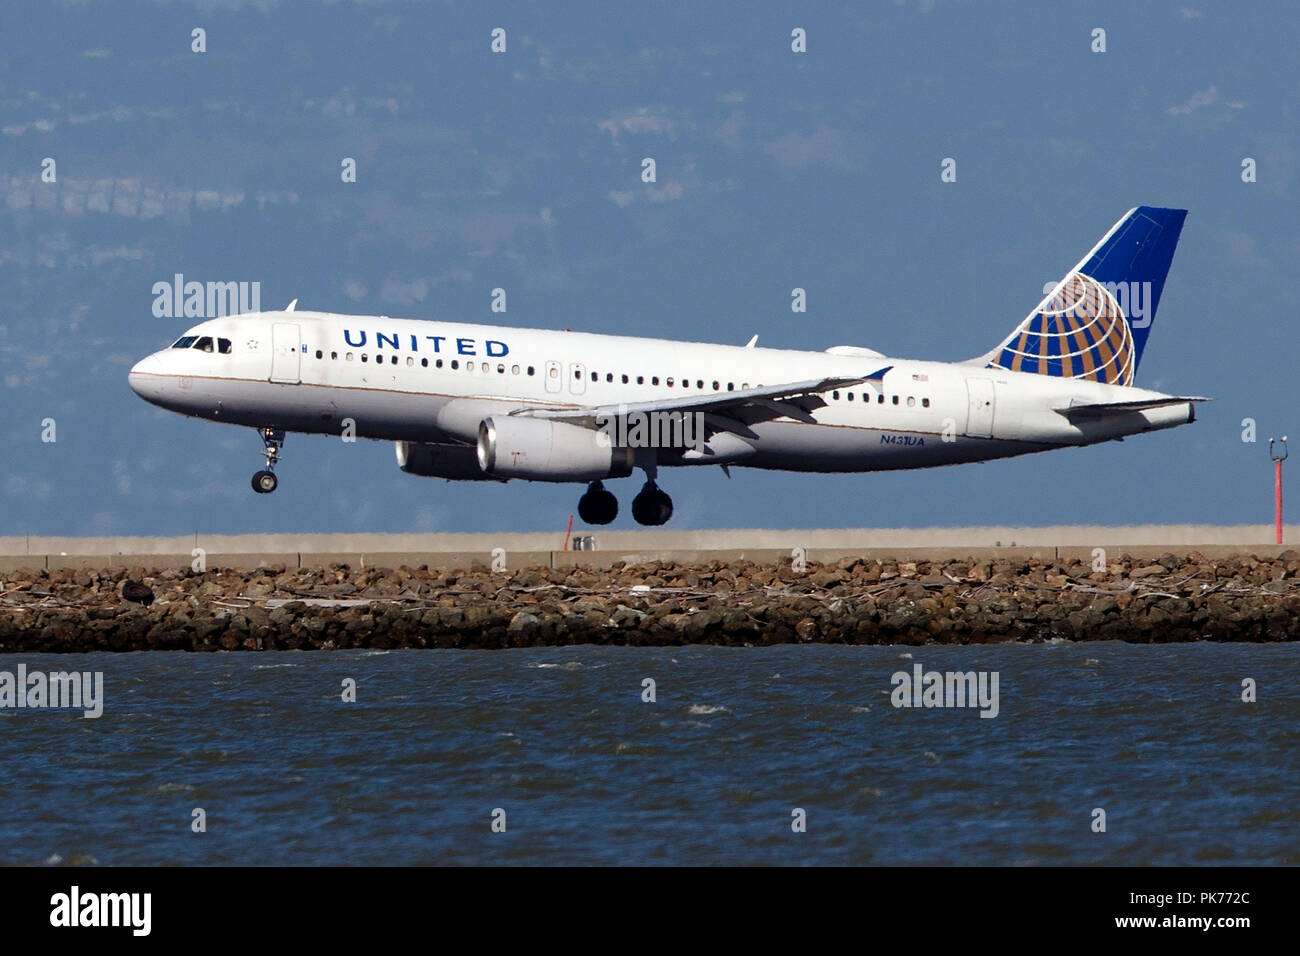 Airbus A320-232 (N 431 UA) betrieben von United Airlines Landung am Flughafen San Francisco International (Ksfo), San Francisco, Kalifornien, Vereinigte Staaten von Amerika Stockfoto